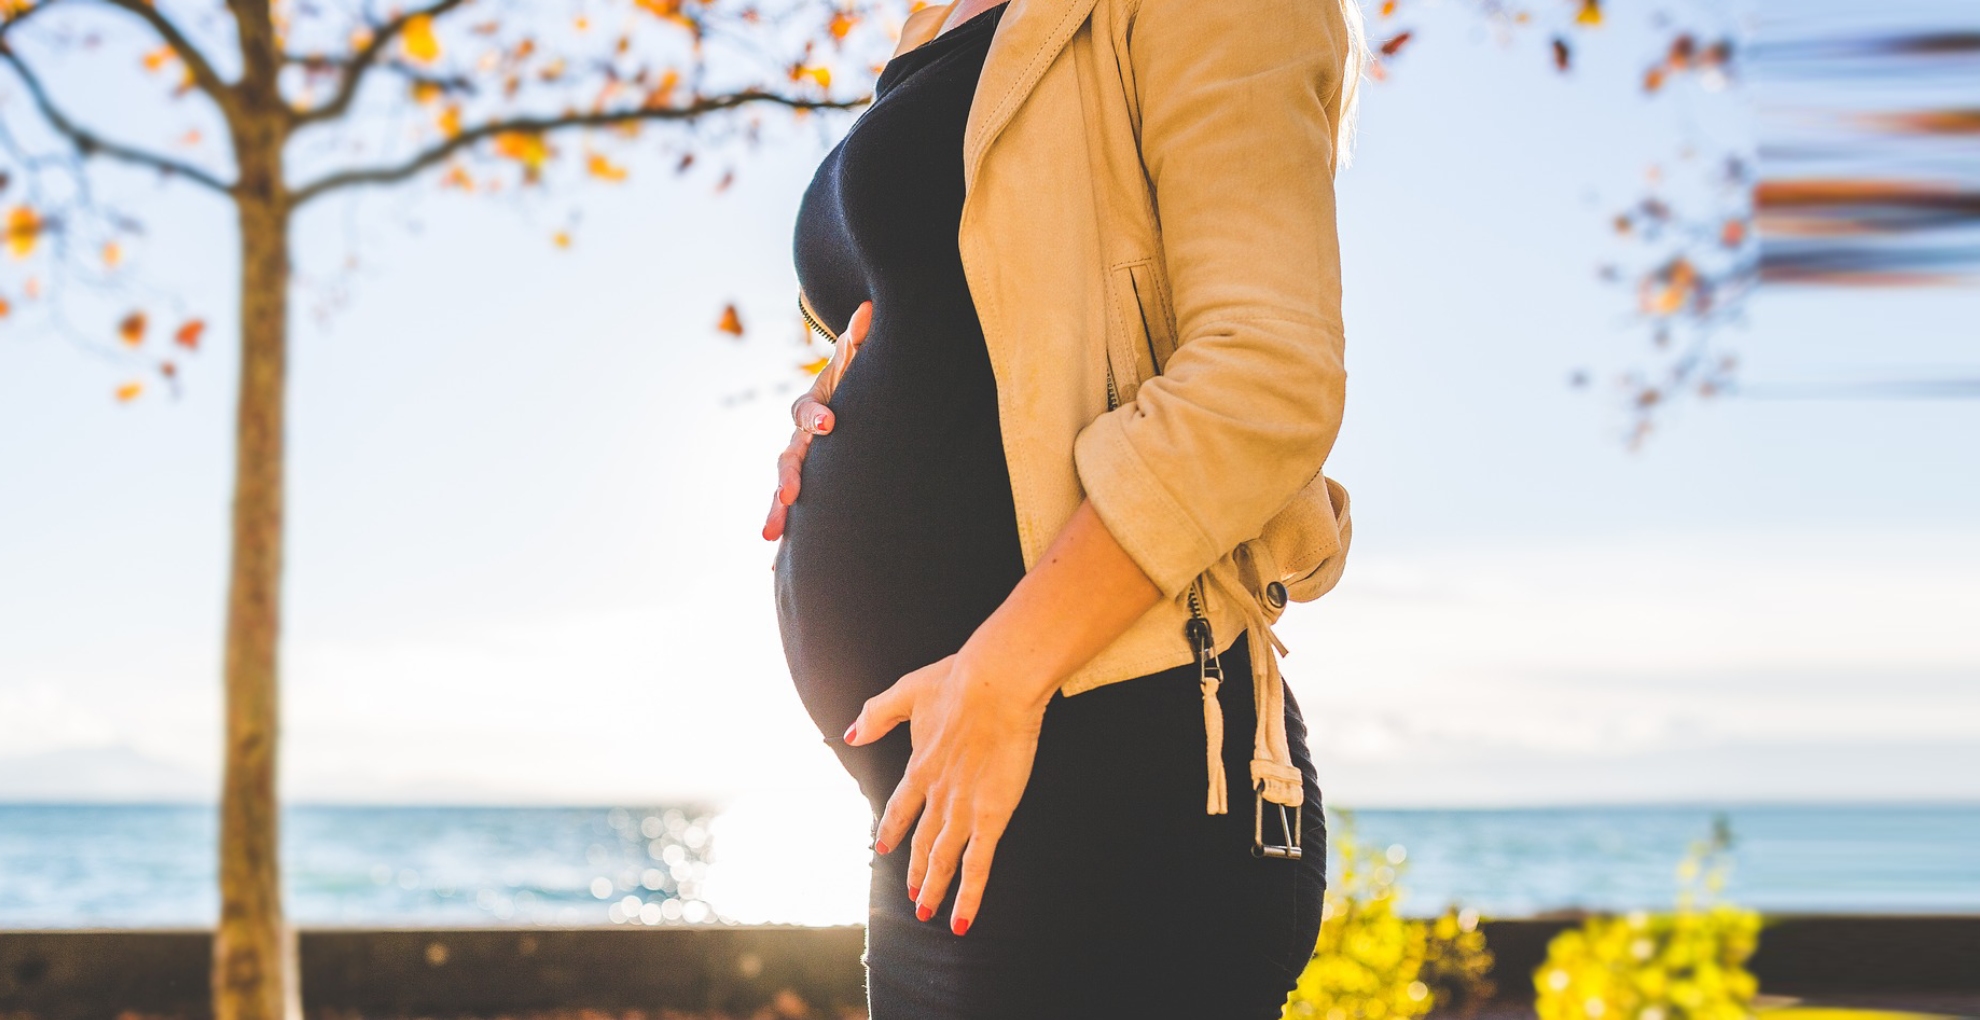 Pregnancy Tips: प्रेग्नेंसी का तीसरा महीना शुरू होते ही रखें इन बातों का ख्याल, बच्चे के विकास में होगा फायदा